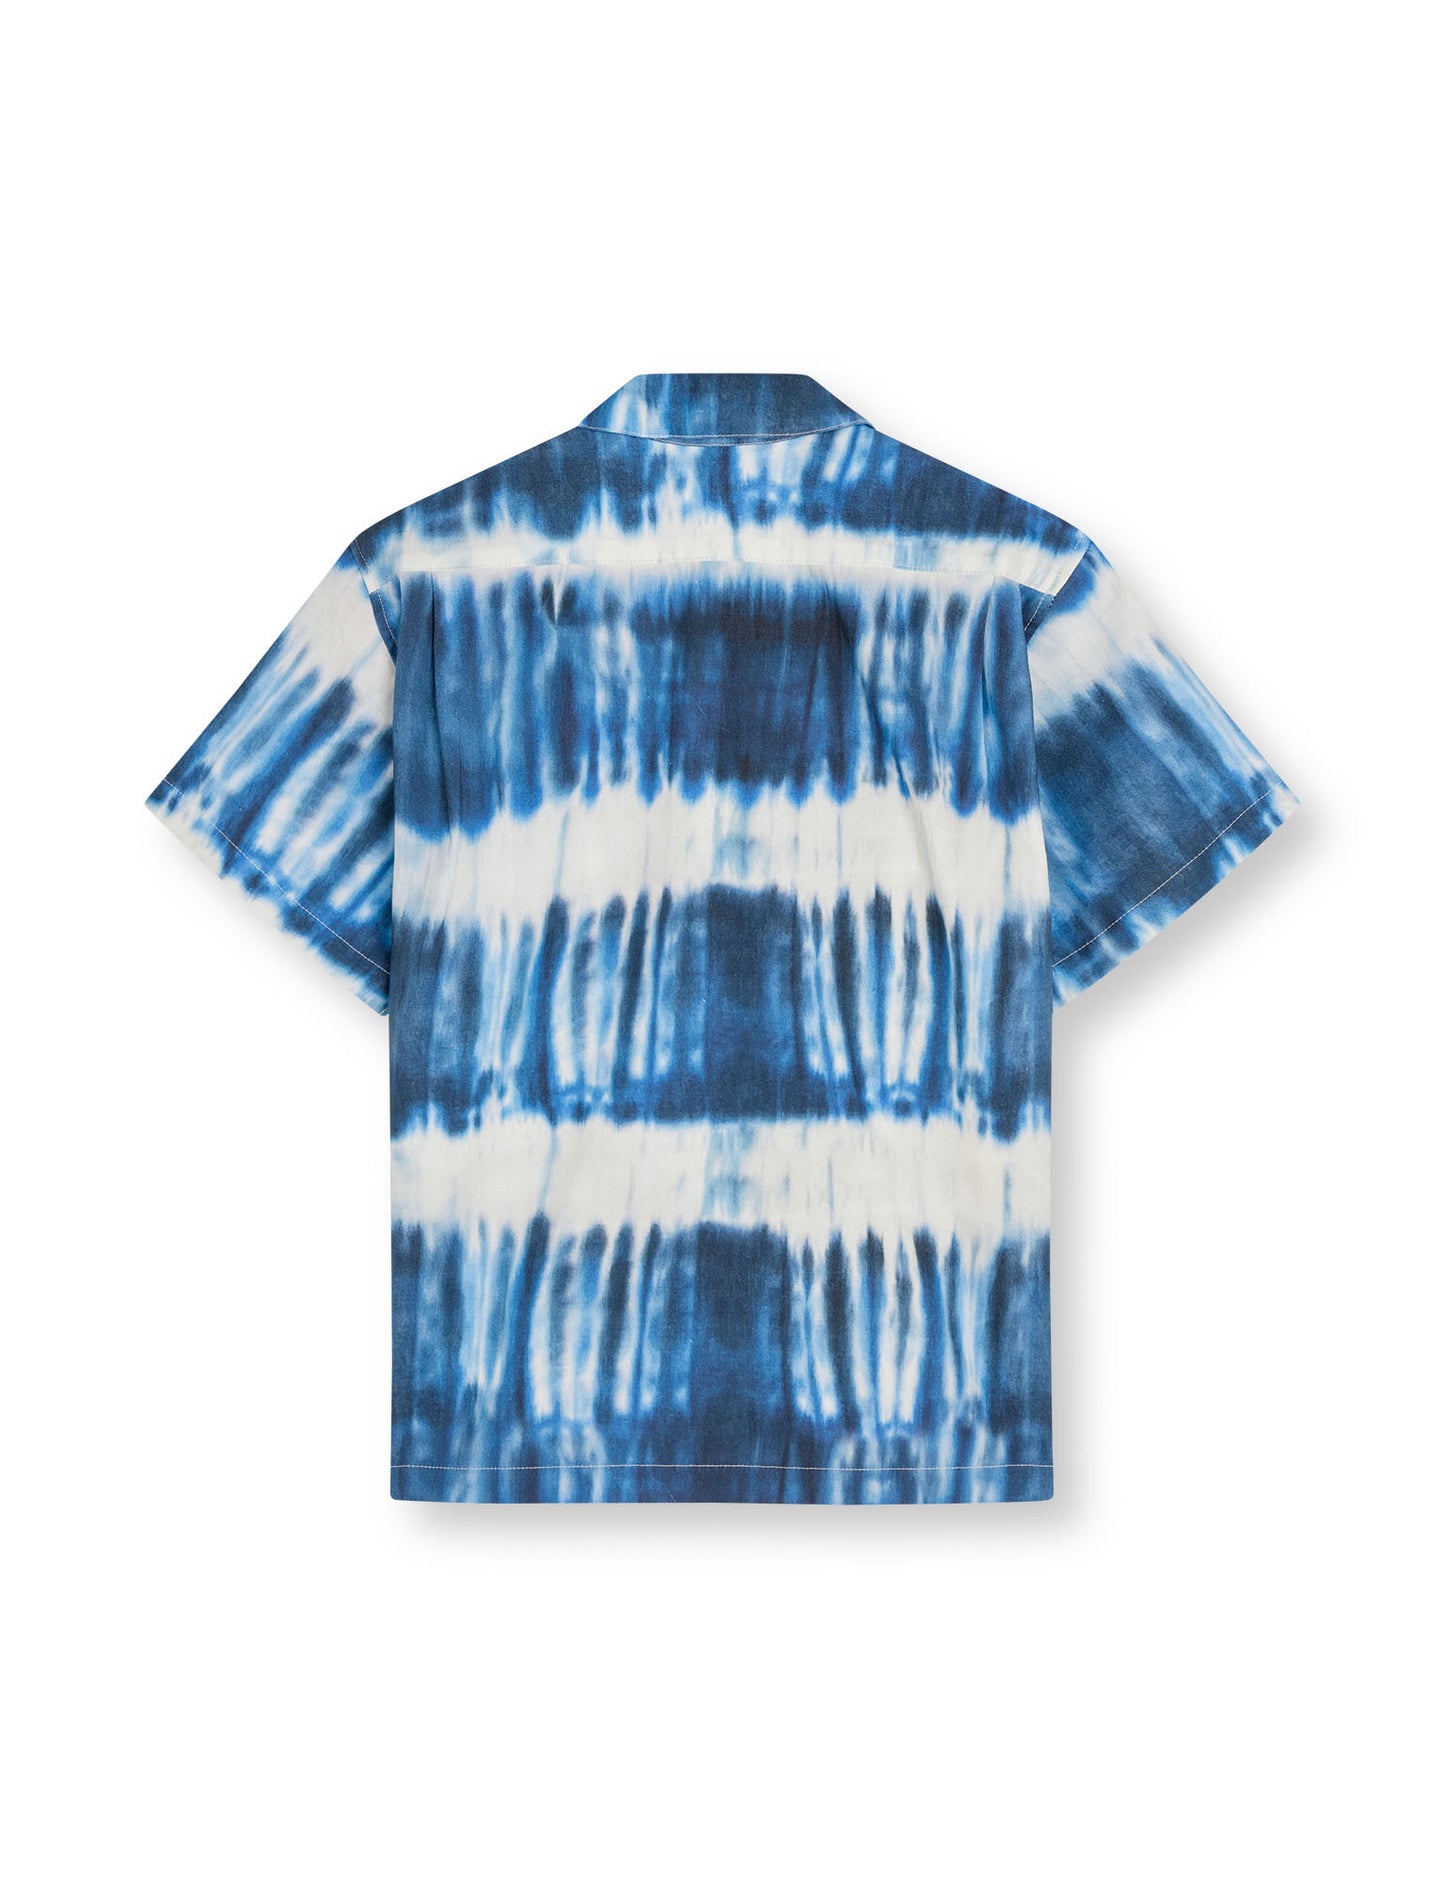 Armando Kenni AOP Shirt, Tie Dye Stripe AOP Merthyl Blu